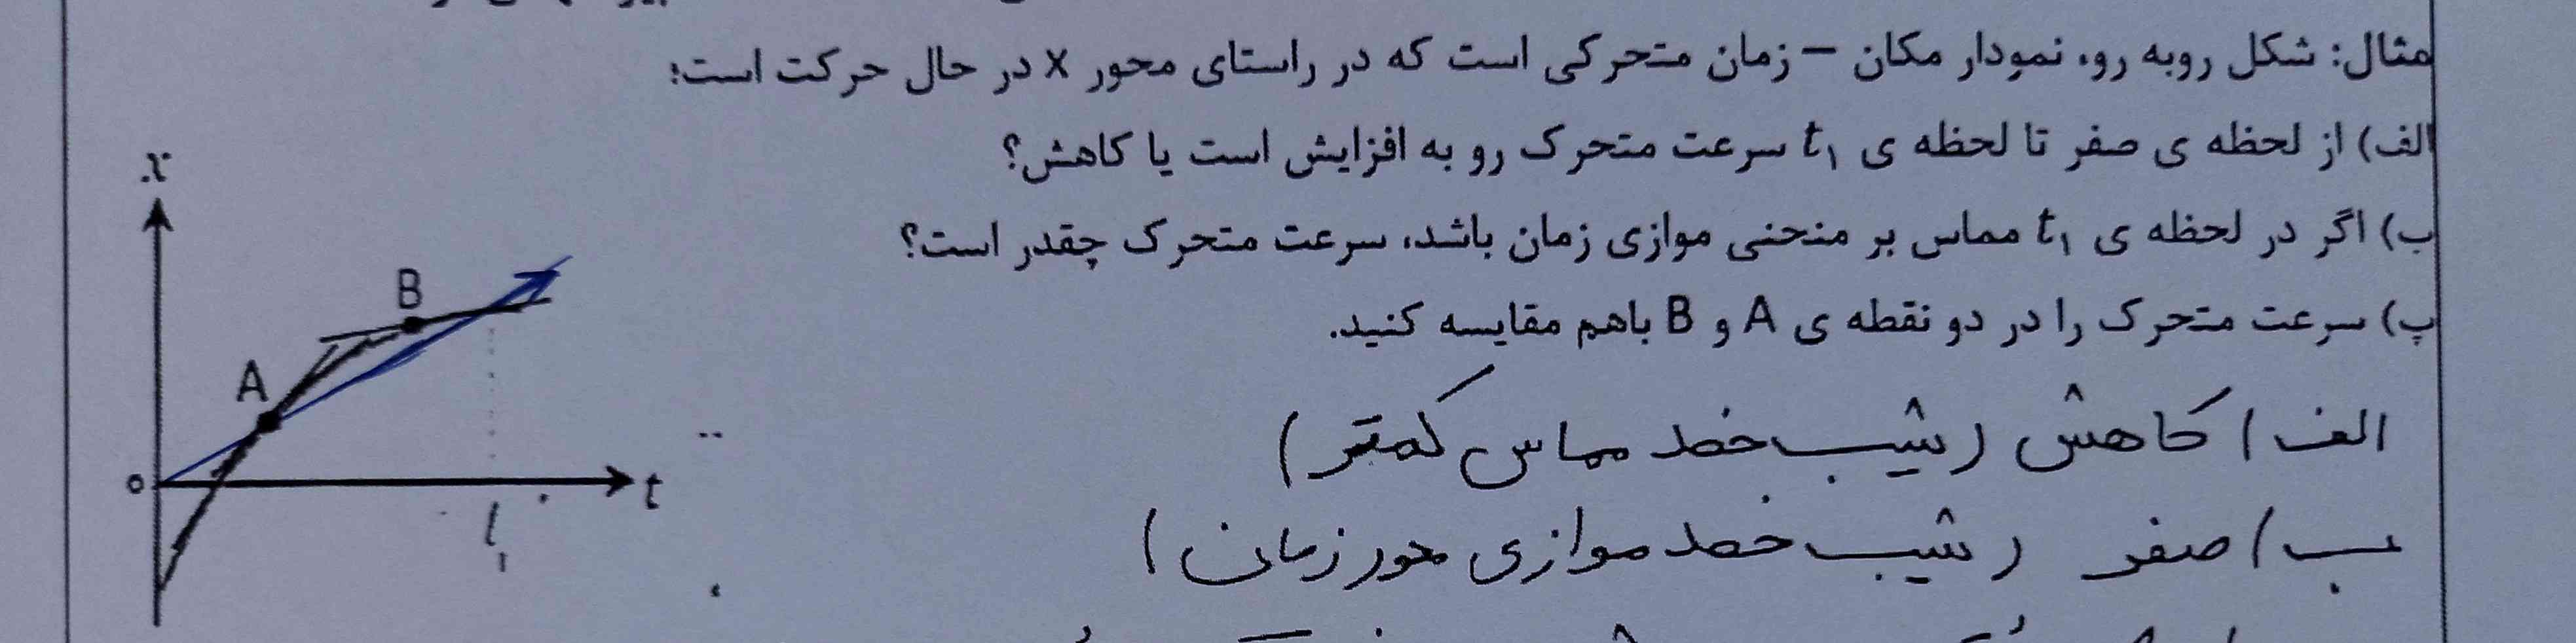 سلام دوستان قسمت الف درسه؟به نظرم اشتباه نوشته شده اگه نه  ممنون میشم توضیح بدید🙏